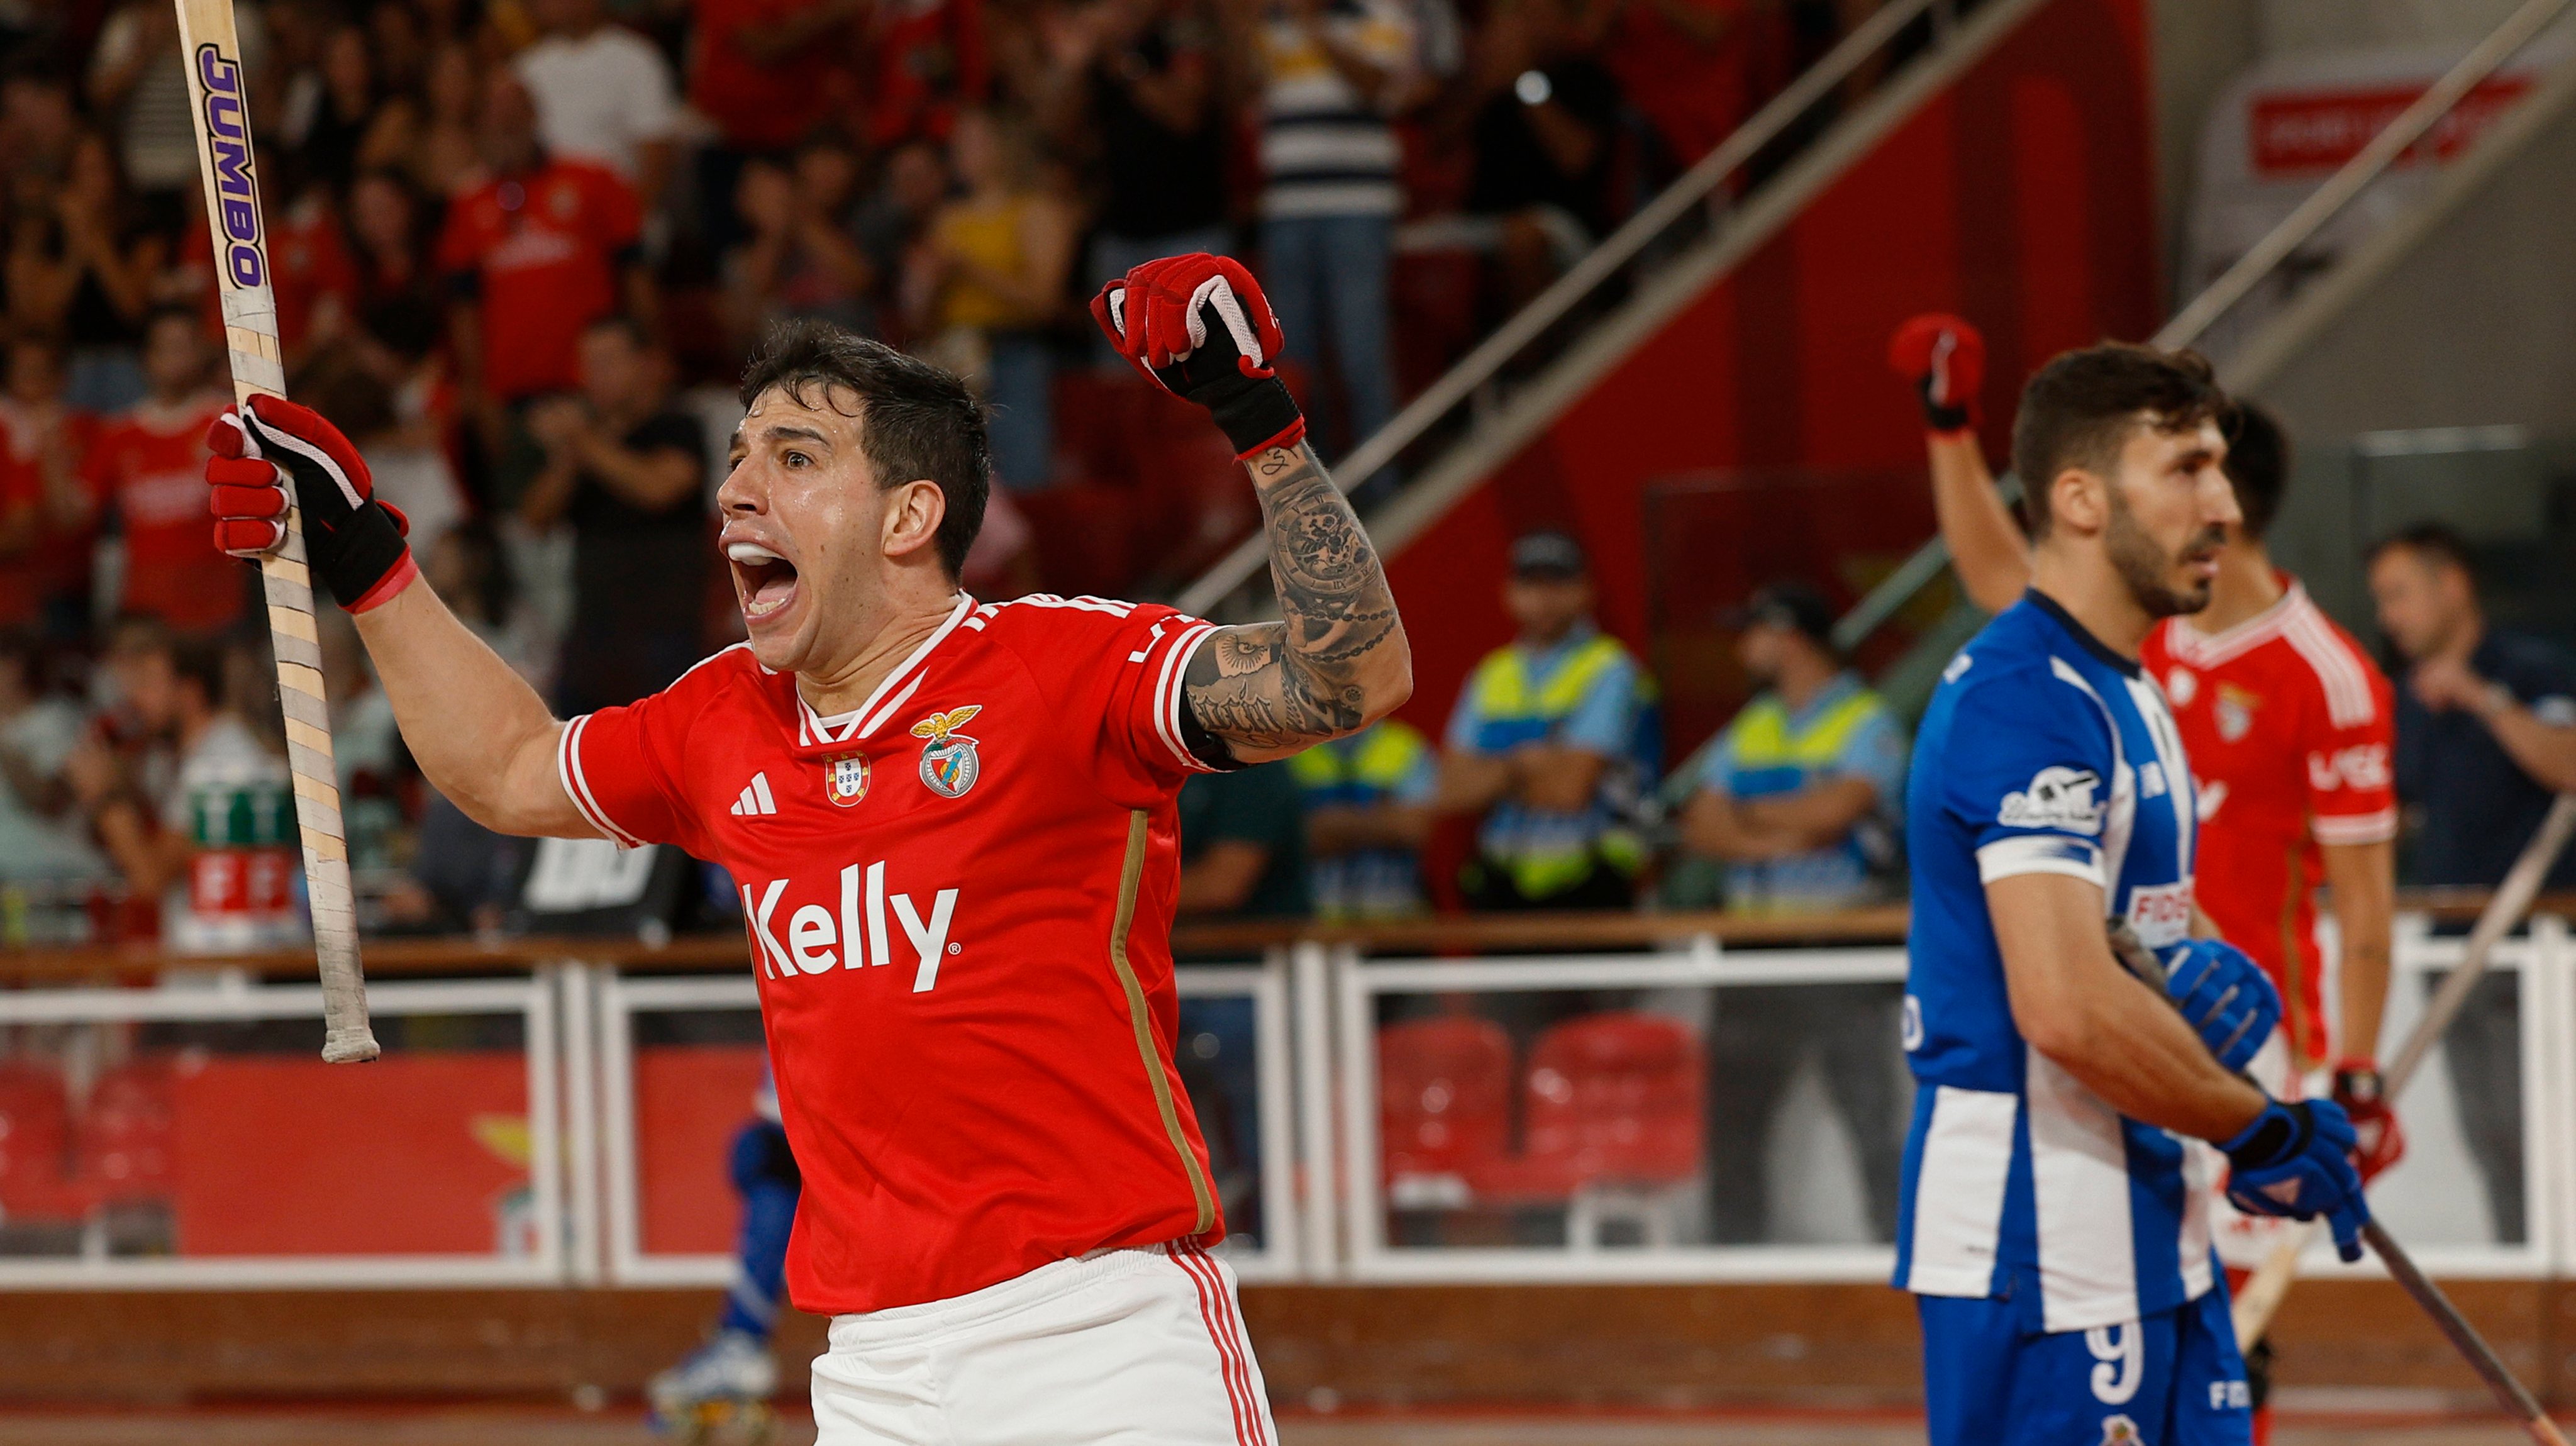 Sporting elimina Benfica da Taça de Portugal de hóquei num jogo em que  “toda a malta gritou e até o padre ajudou” – Observador